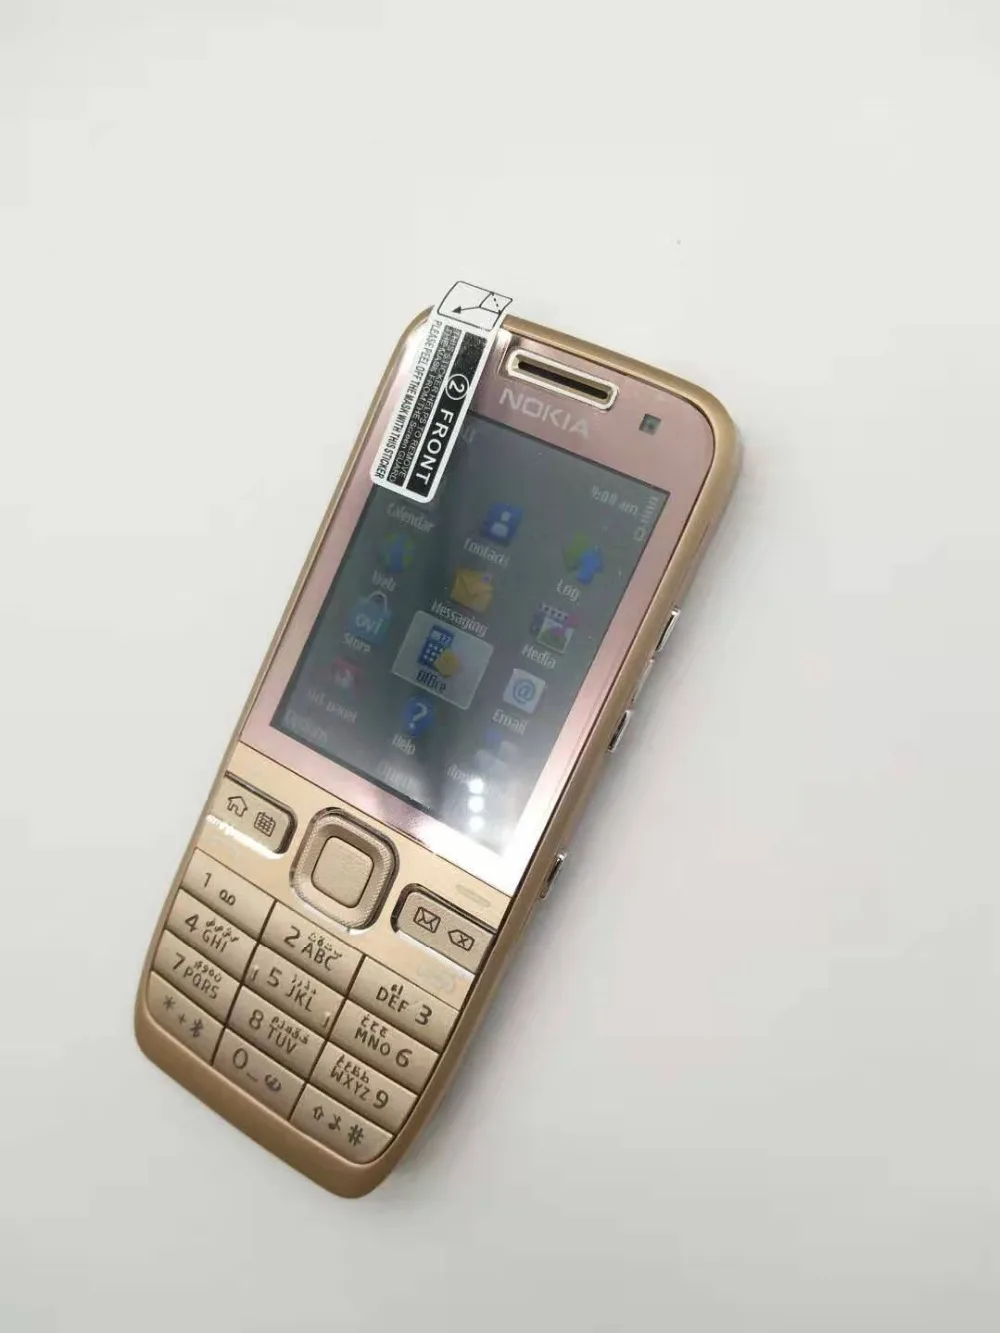 E52 Nokia E52 wifi gps JAVA 3g разблокированный мобильный телефон трубка Русский Арабский Иврит Клавиатура Телефон Восстановленный